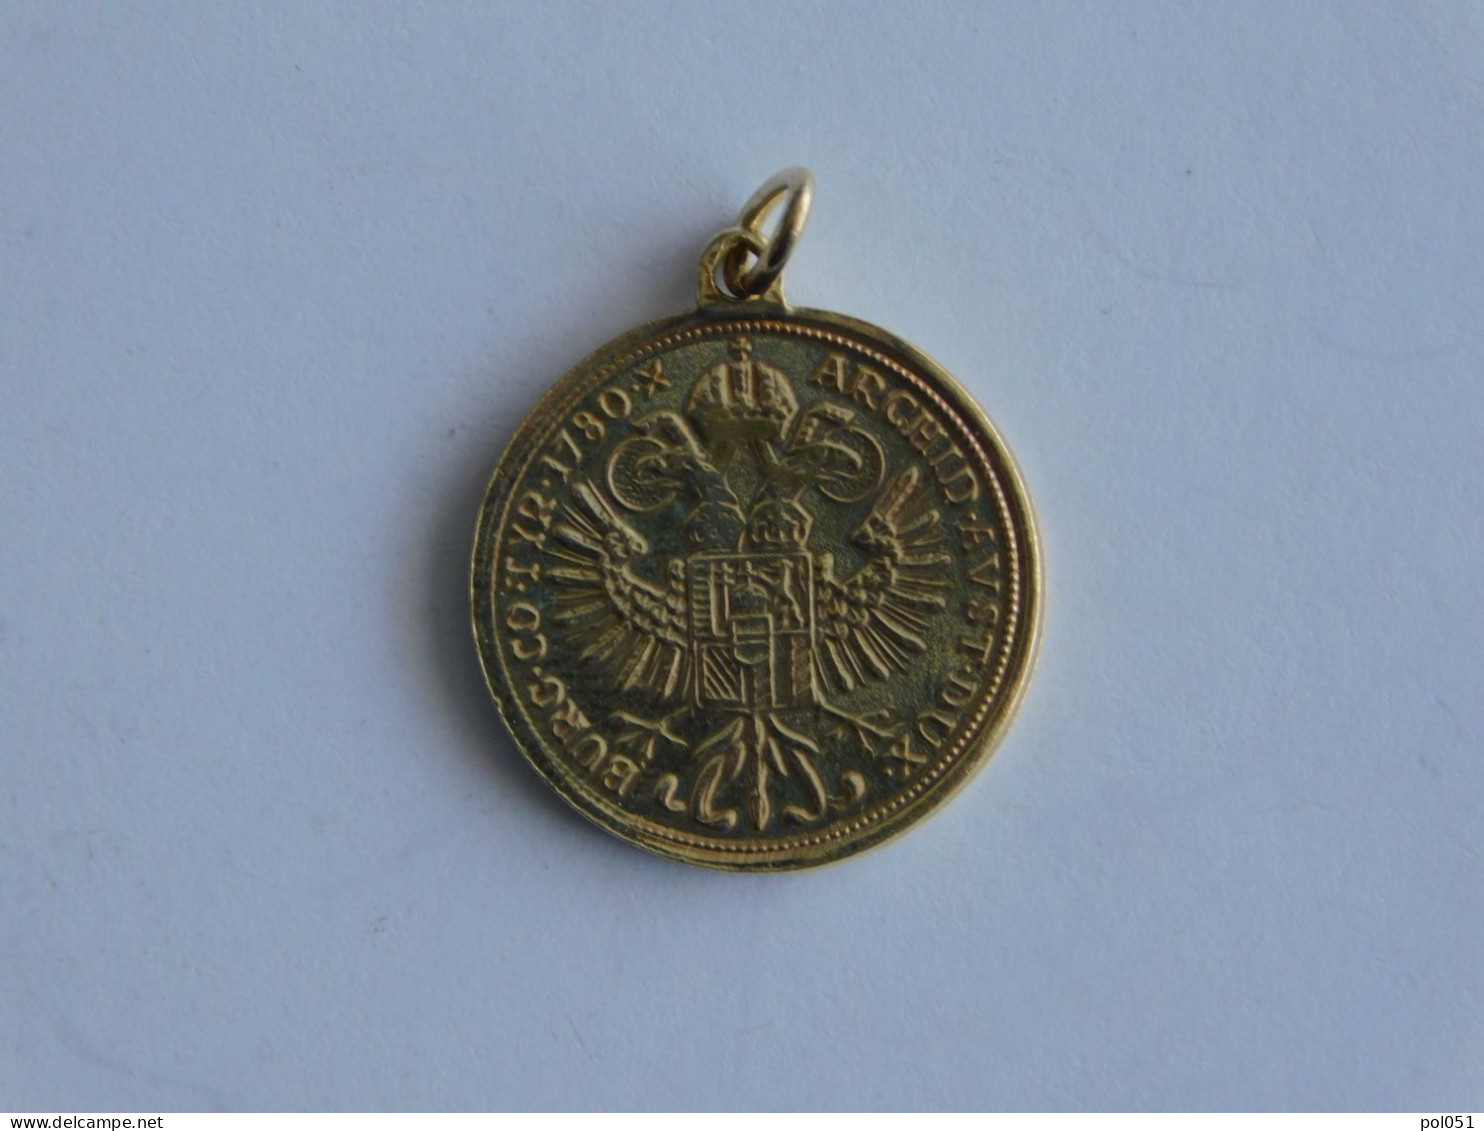 JETON Maria Theresa D'Autriche 1780 Medaille - Royaux / De Noblesse